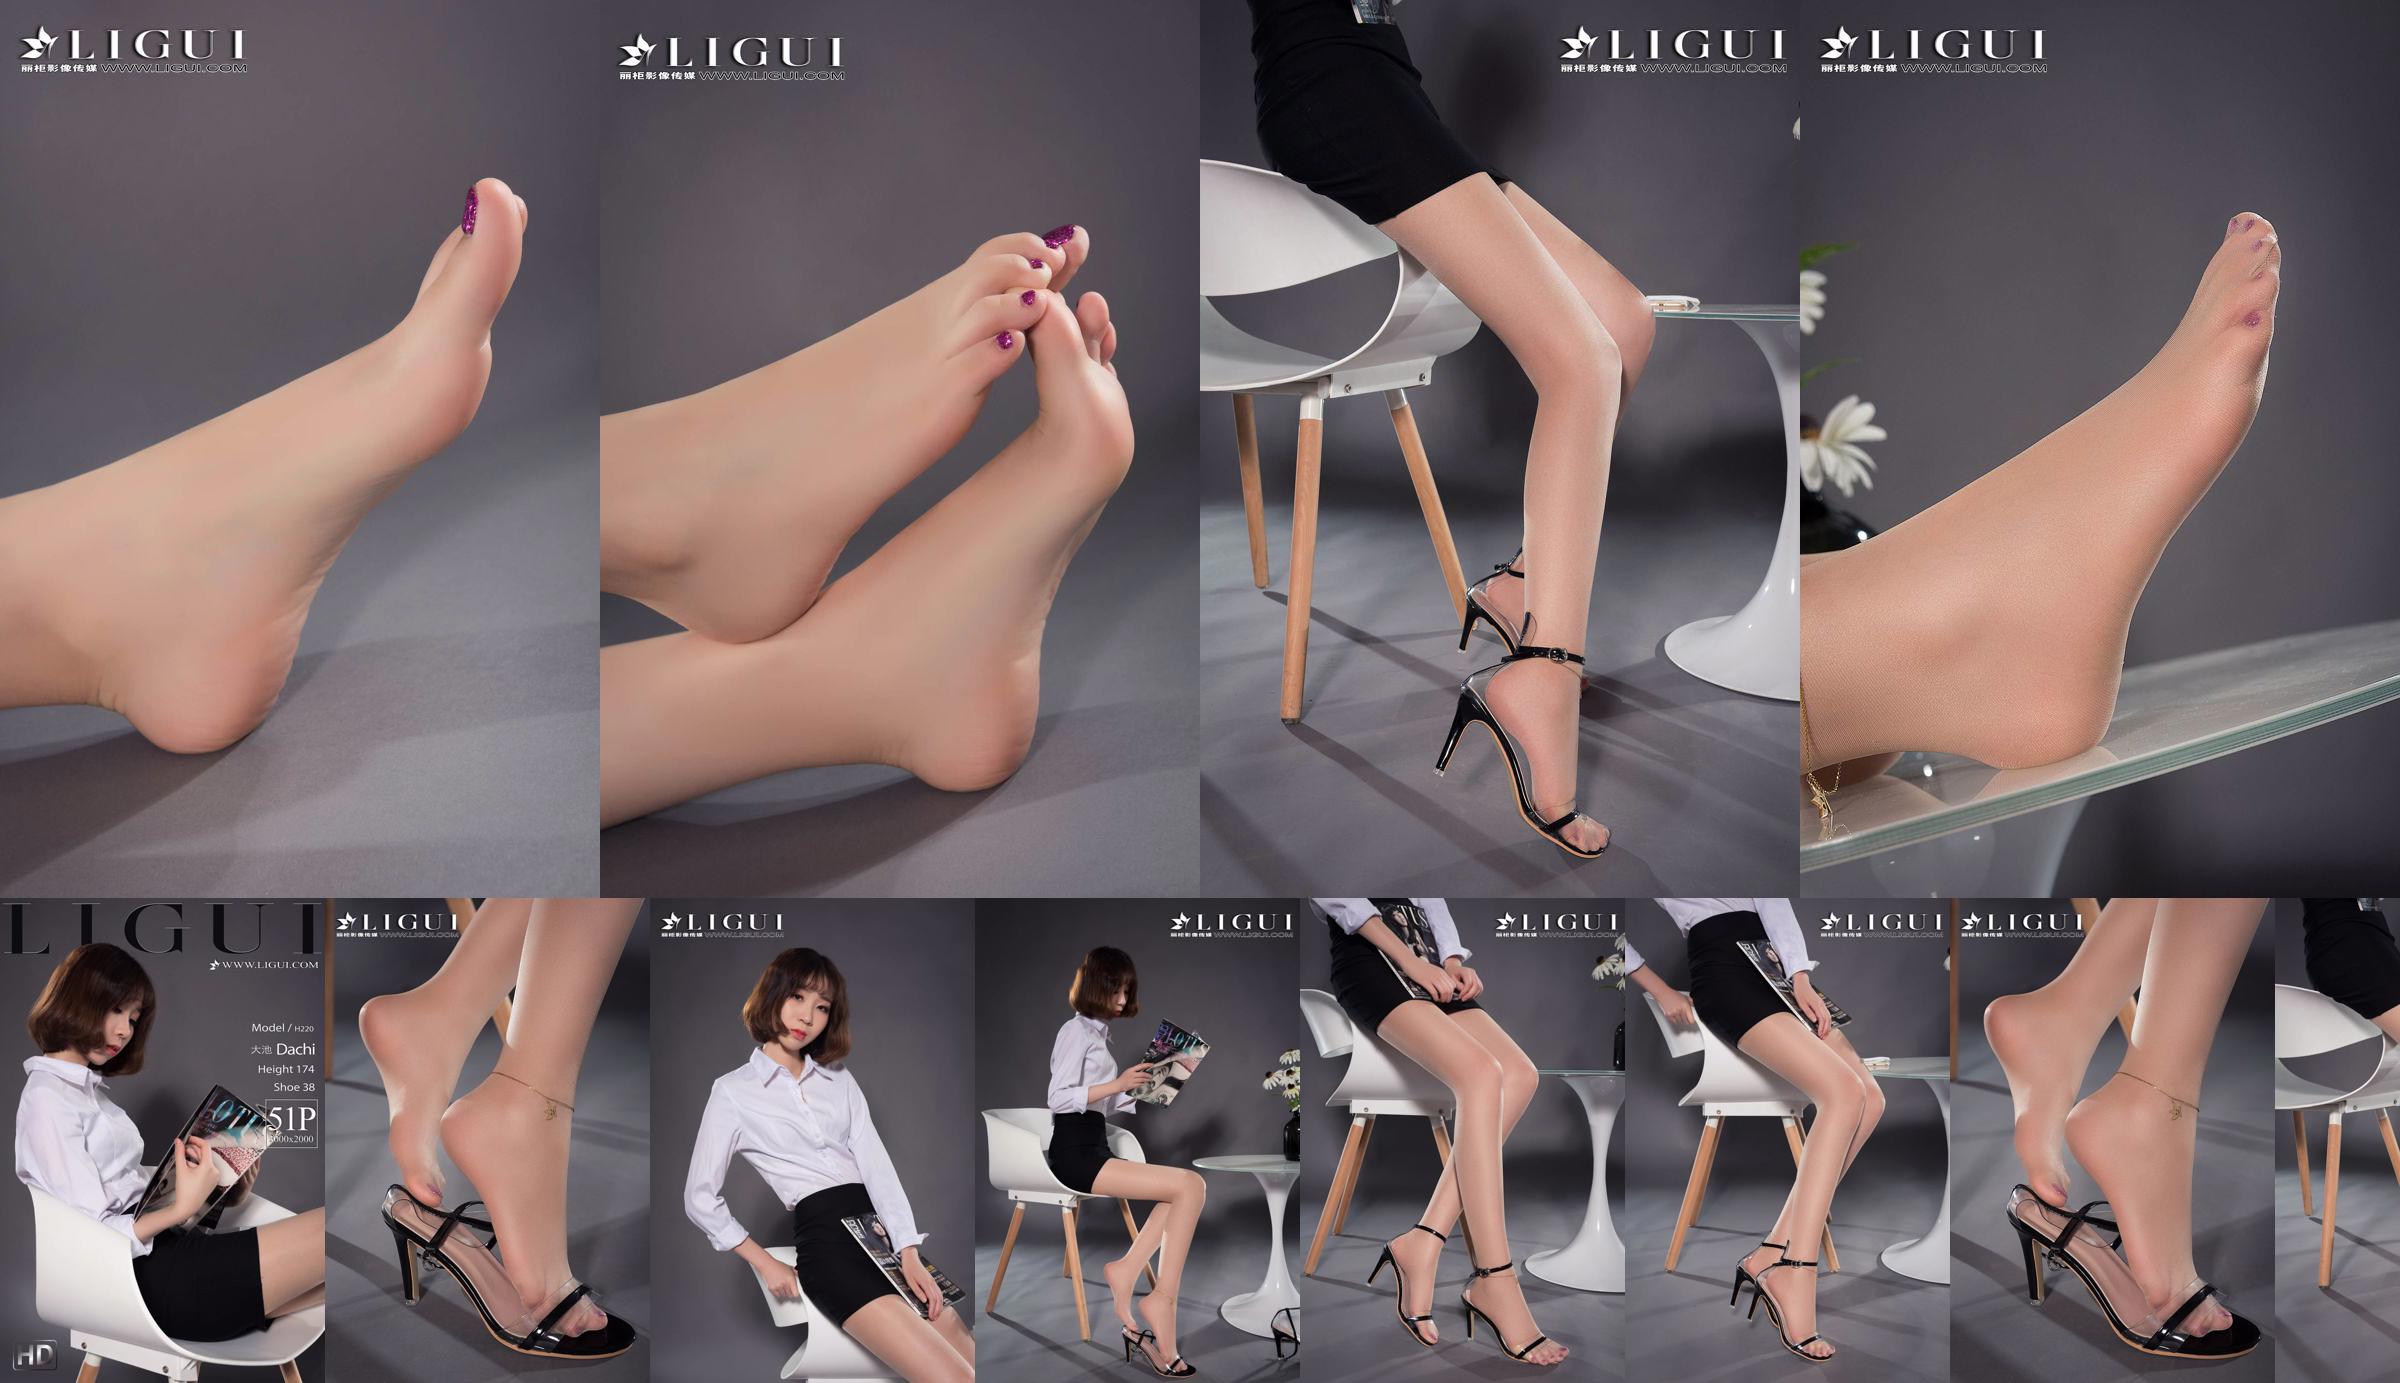 Người mẫu chân Oike "Heo với giày cao gót CV" [Ligui Ligui] Vẻ đẹp Internet No.5067fc Trang 3